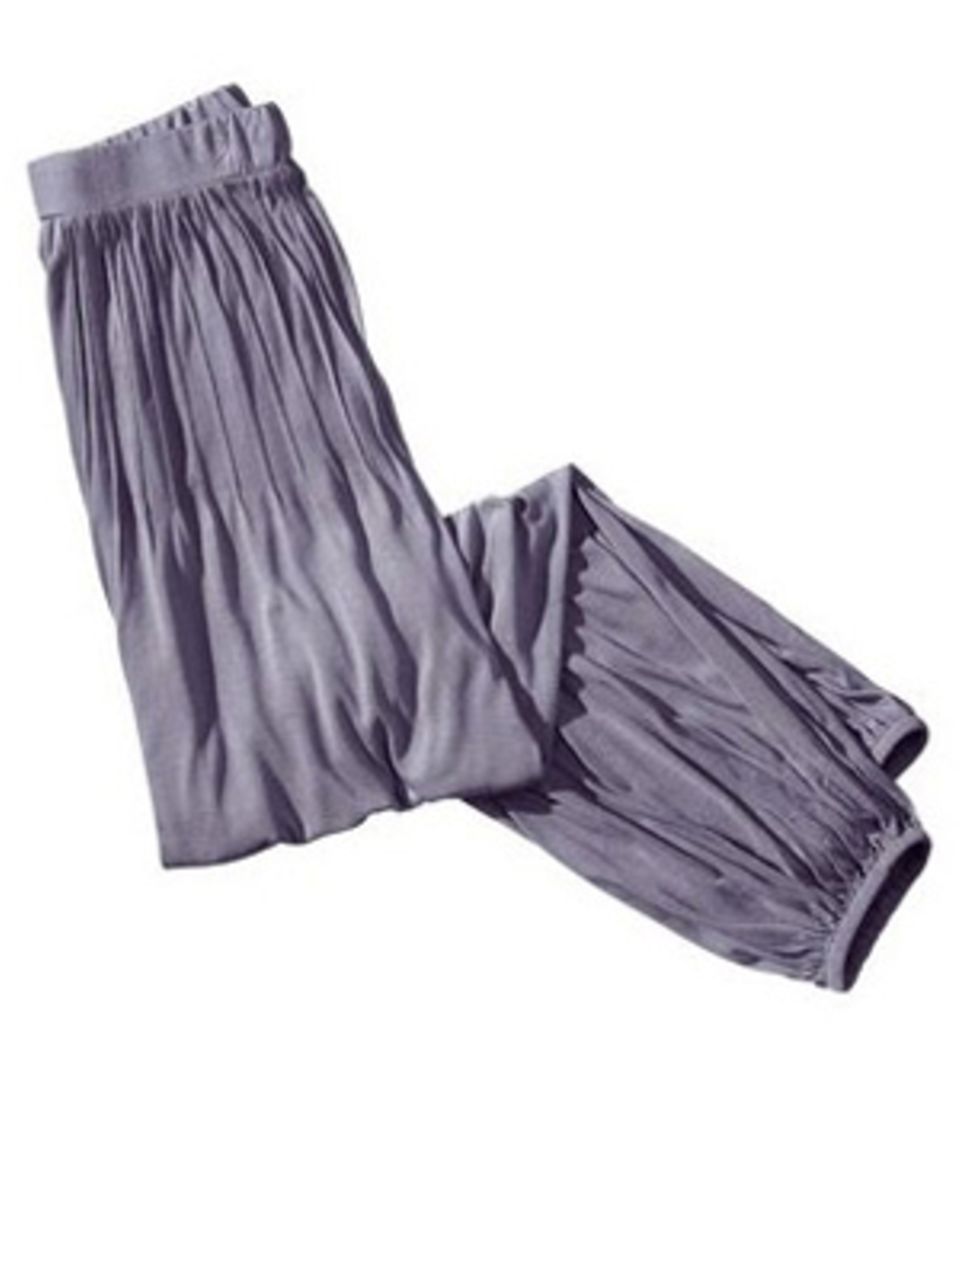 Gemütliche Yoga-Pants mit reizenden Biesen. Lysgaard, um 70 Euro.